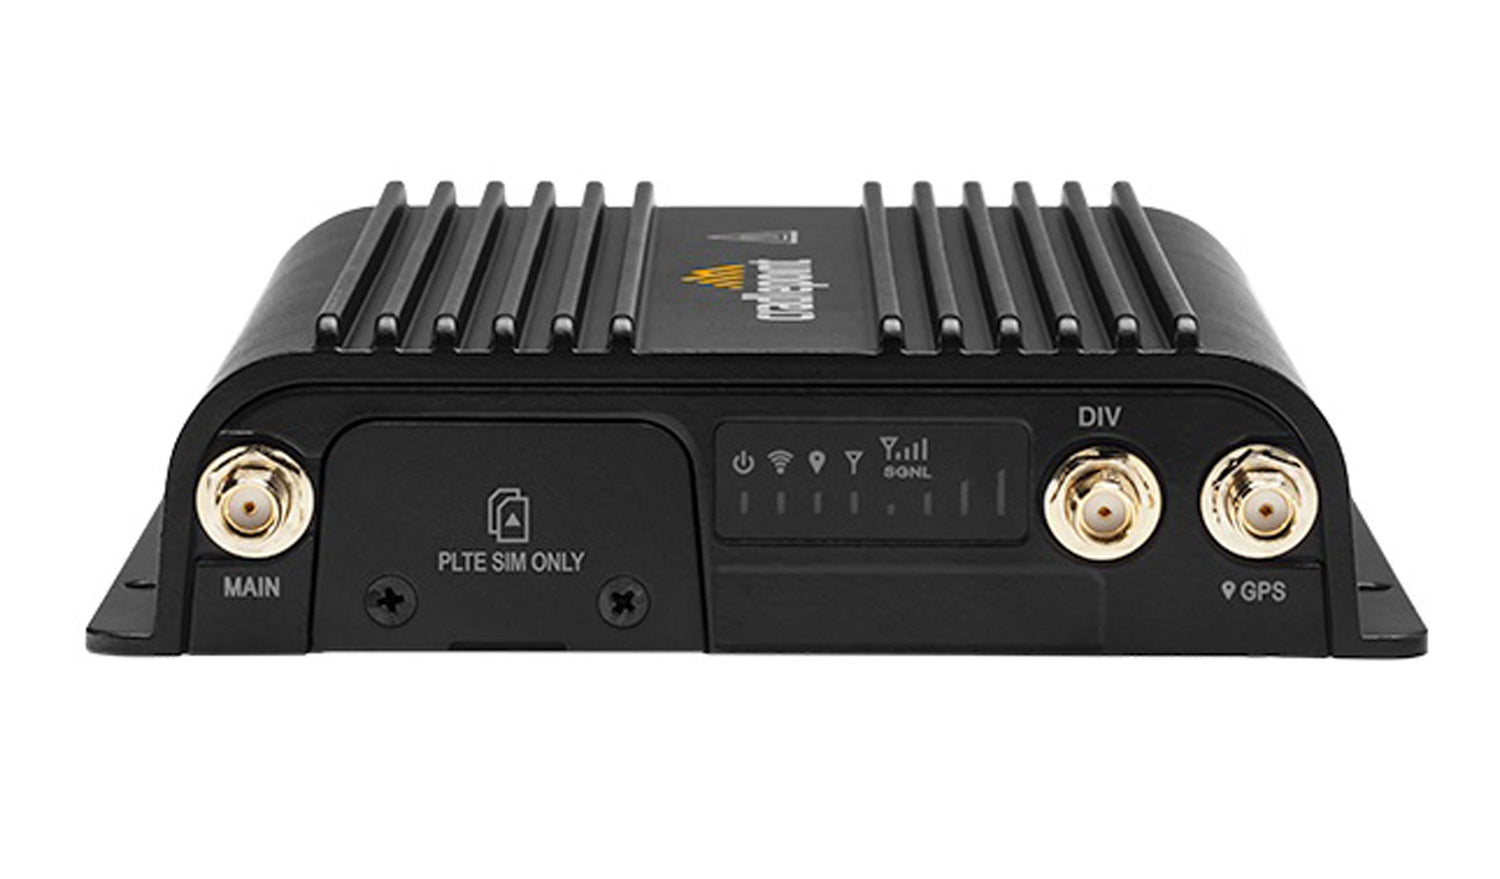 Routeur Cradlepoint R500 avec Wi-Fi (modem 300 Mbps) avec alimentation CA et antennes, Amérique du Nord 